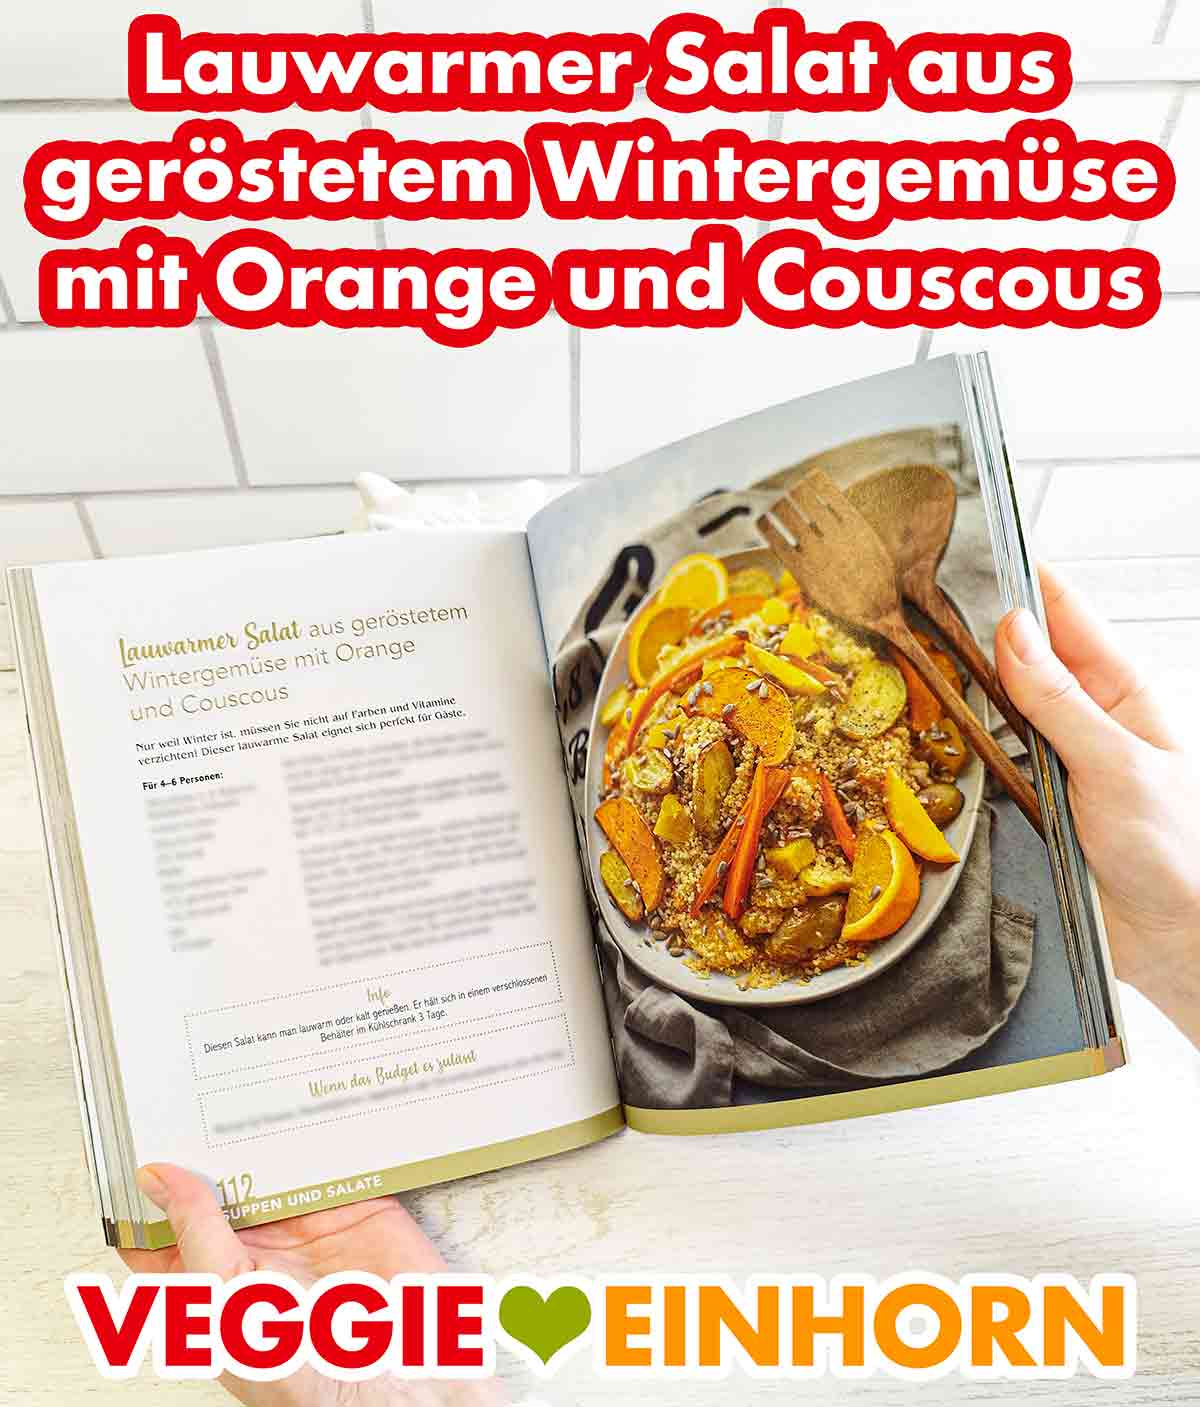 Lauwarmer Salat aus geröstetem Wintergemüse mit Orange und Couscous im Kochbuch Vegan und Günstig von Marie Laforêt